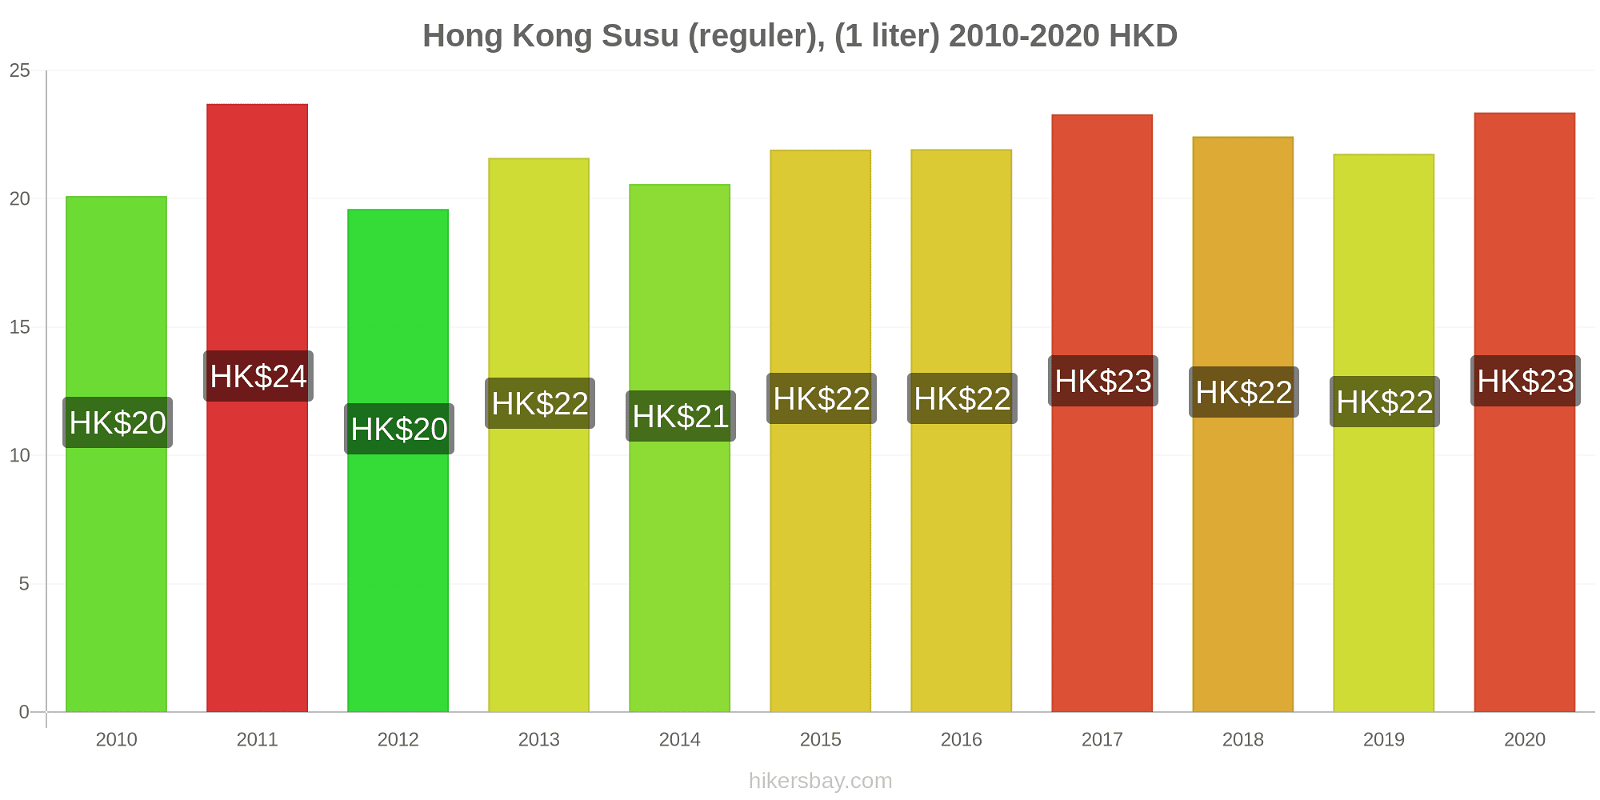 Hong Kong perubahan harga Susu (reguler), (1 liter) hikersbay.com